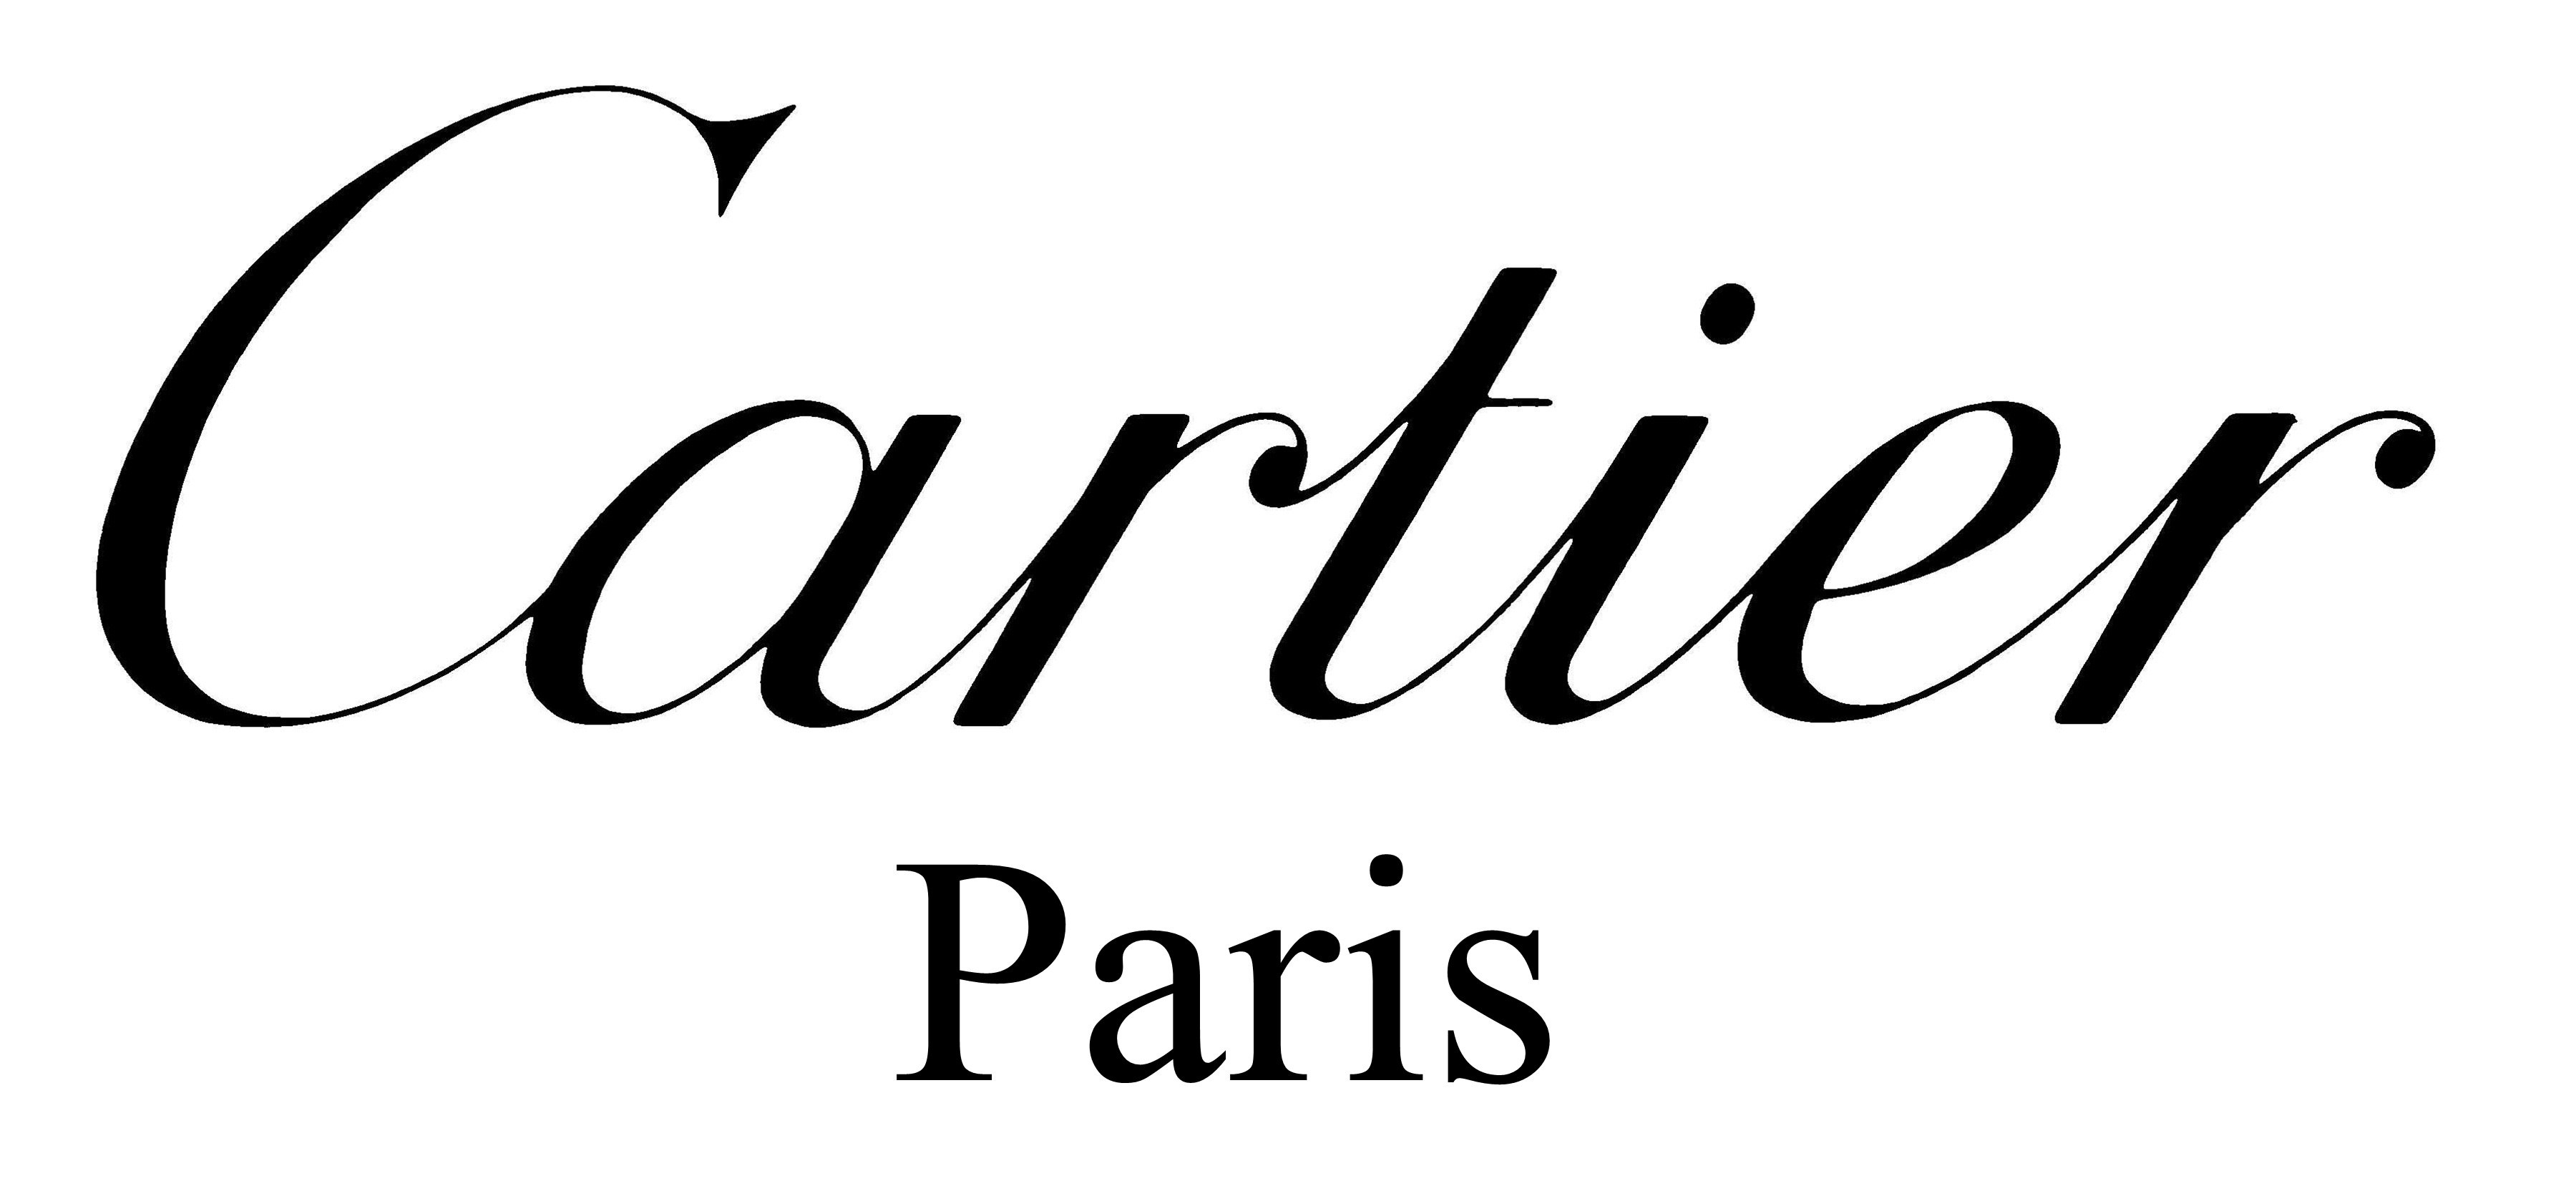 logo of cartier